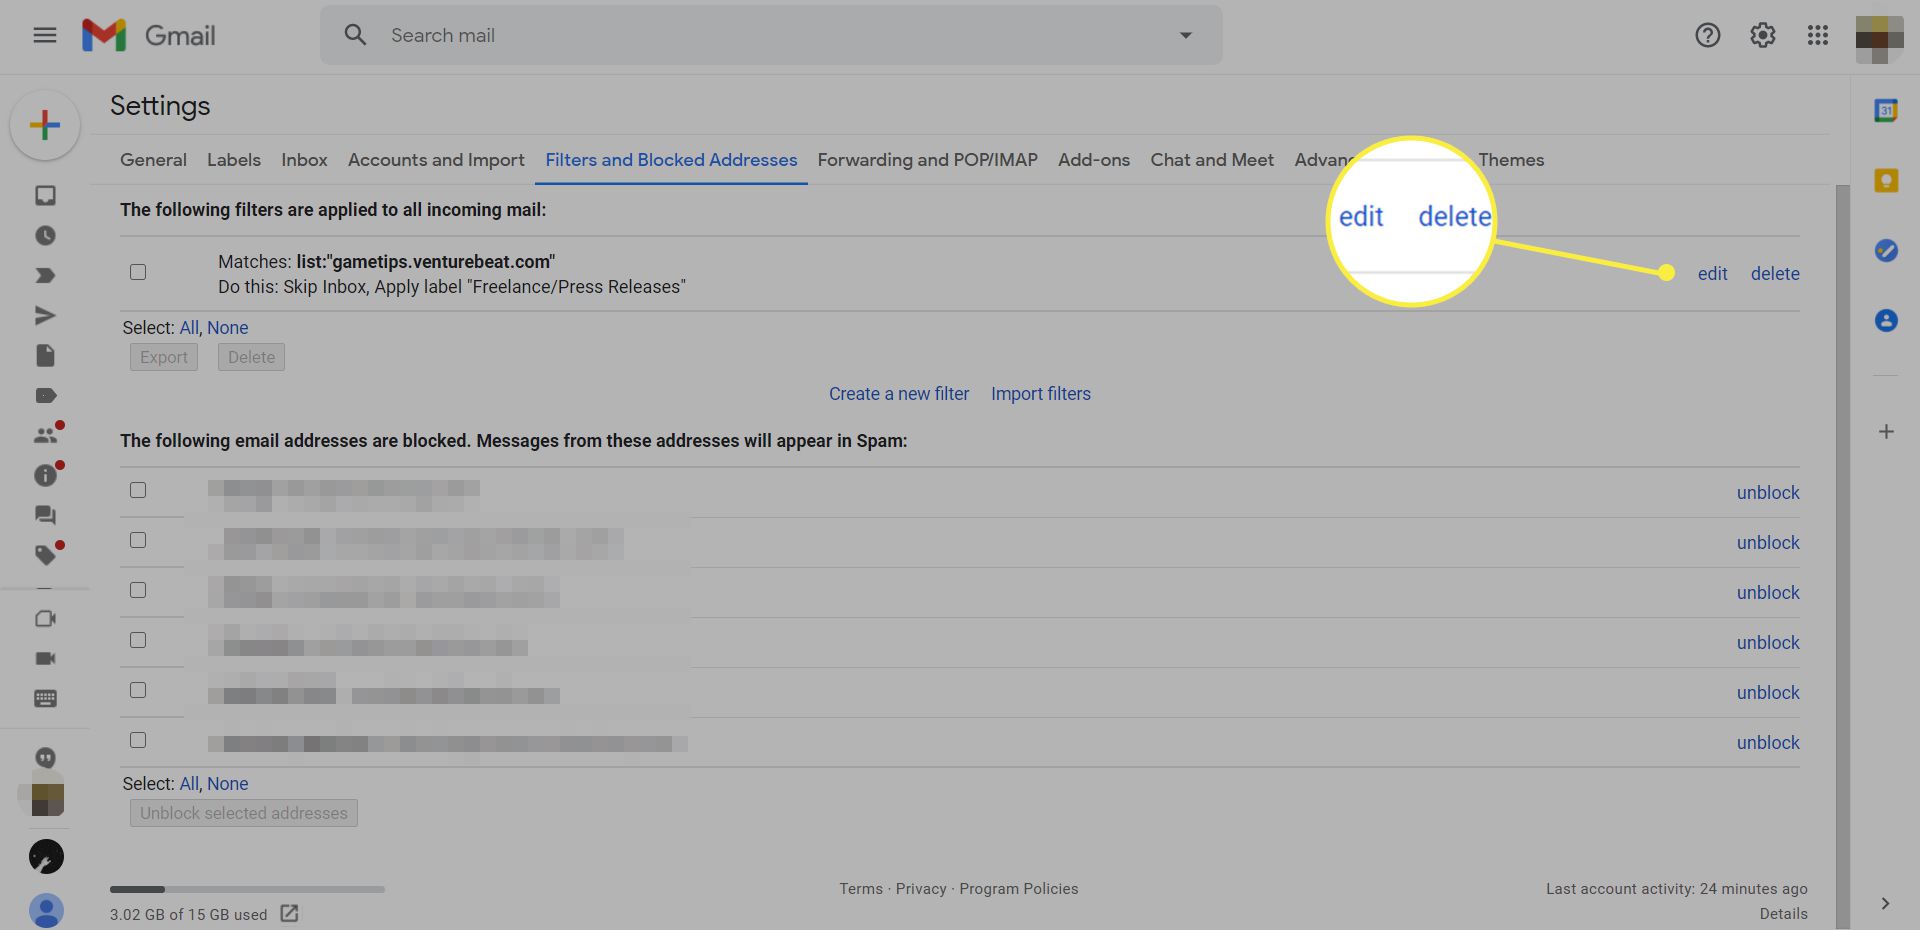 Σελίδα φίλτρων Gmail και αποκλεισμένων διευθύνσεων με επισημασμένες τις επιλογές επεξεργασίας και διαγραφής φίλτρου